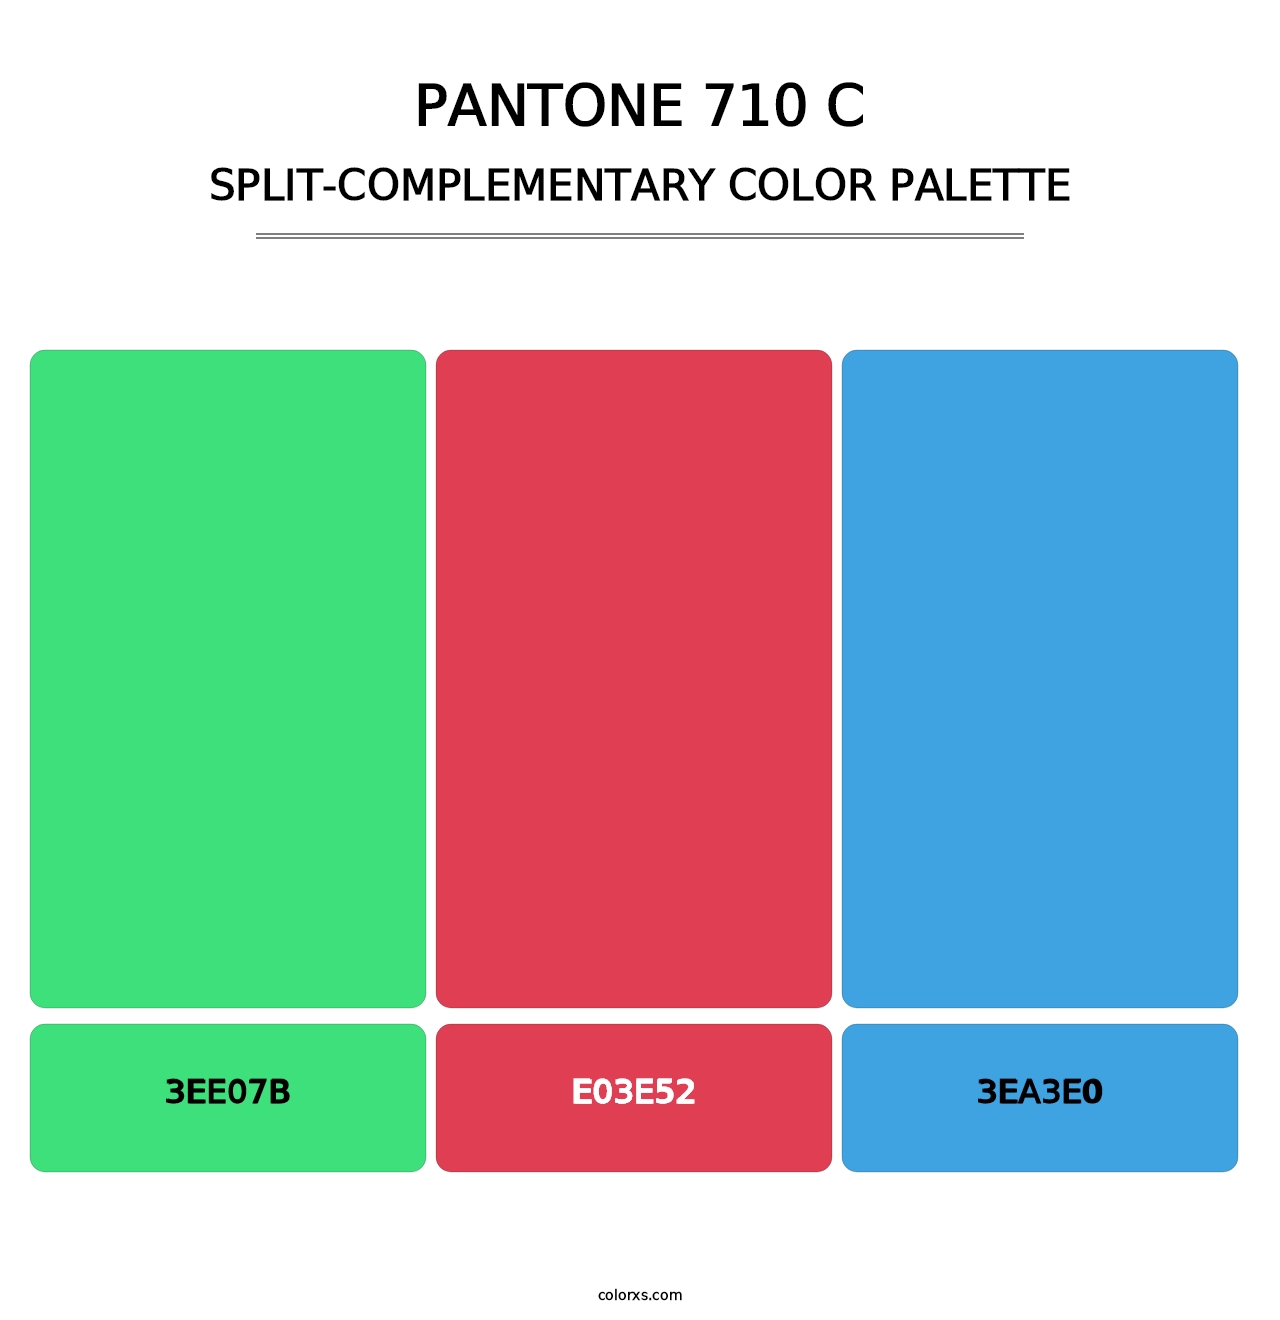 PANTONE 710 C - Split-Complementary Color Palette